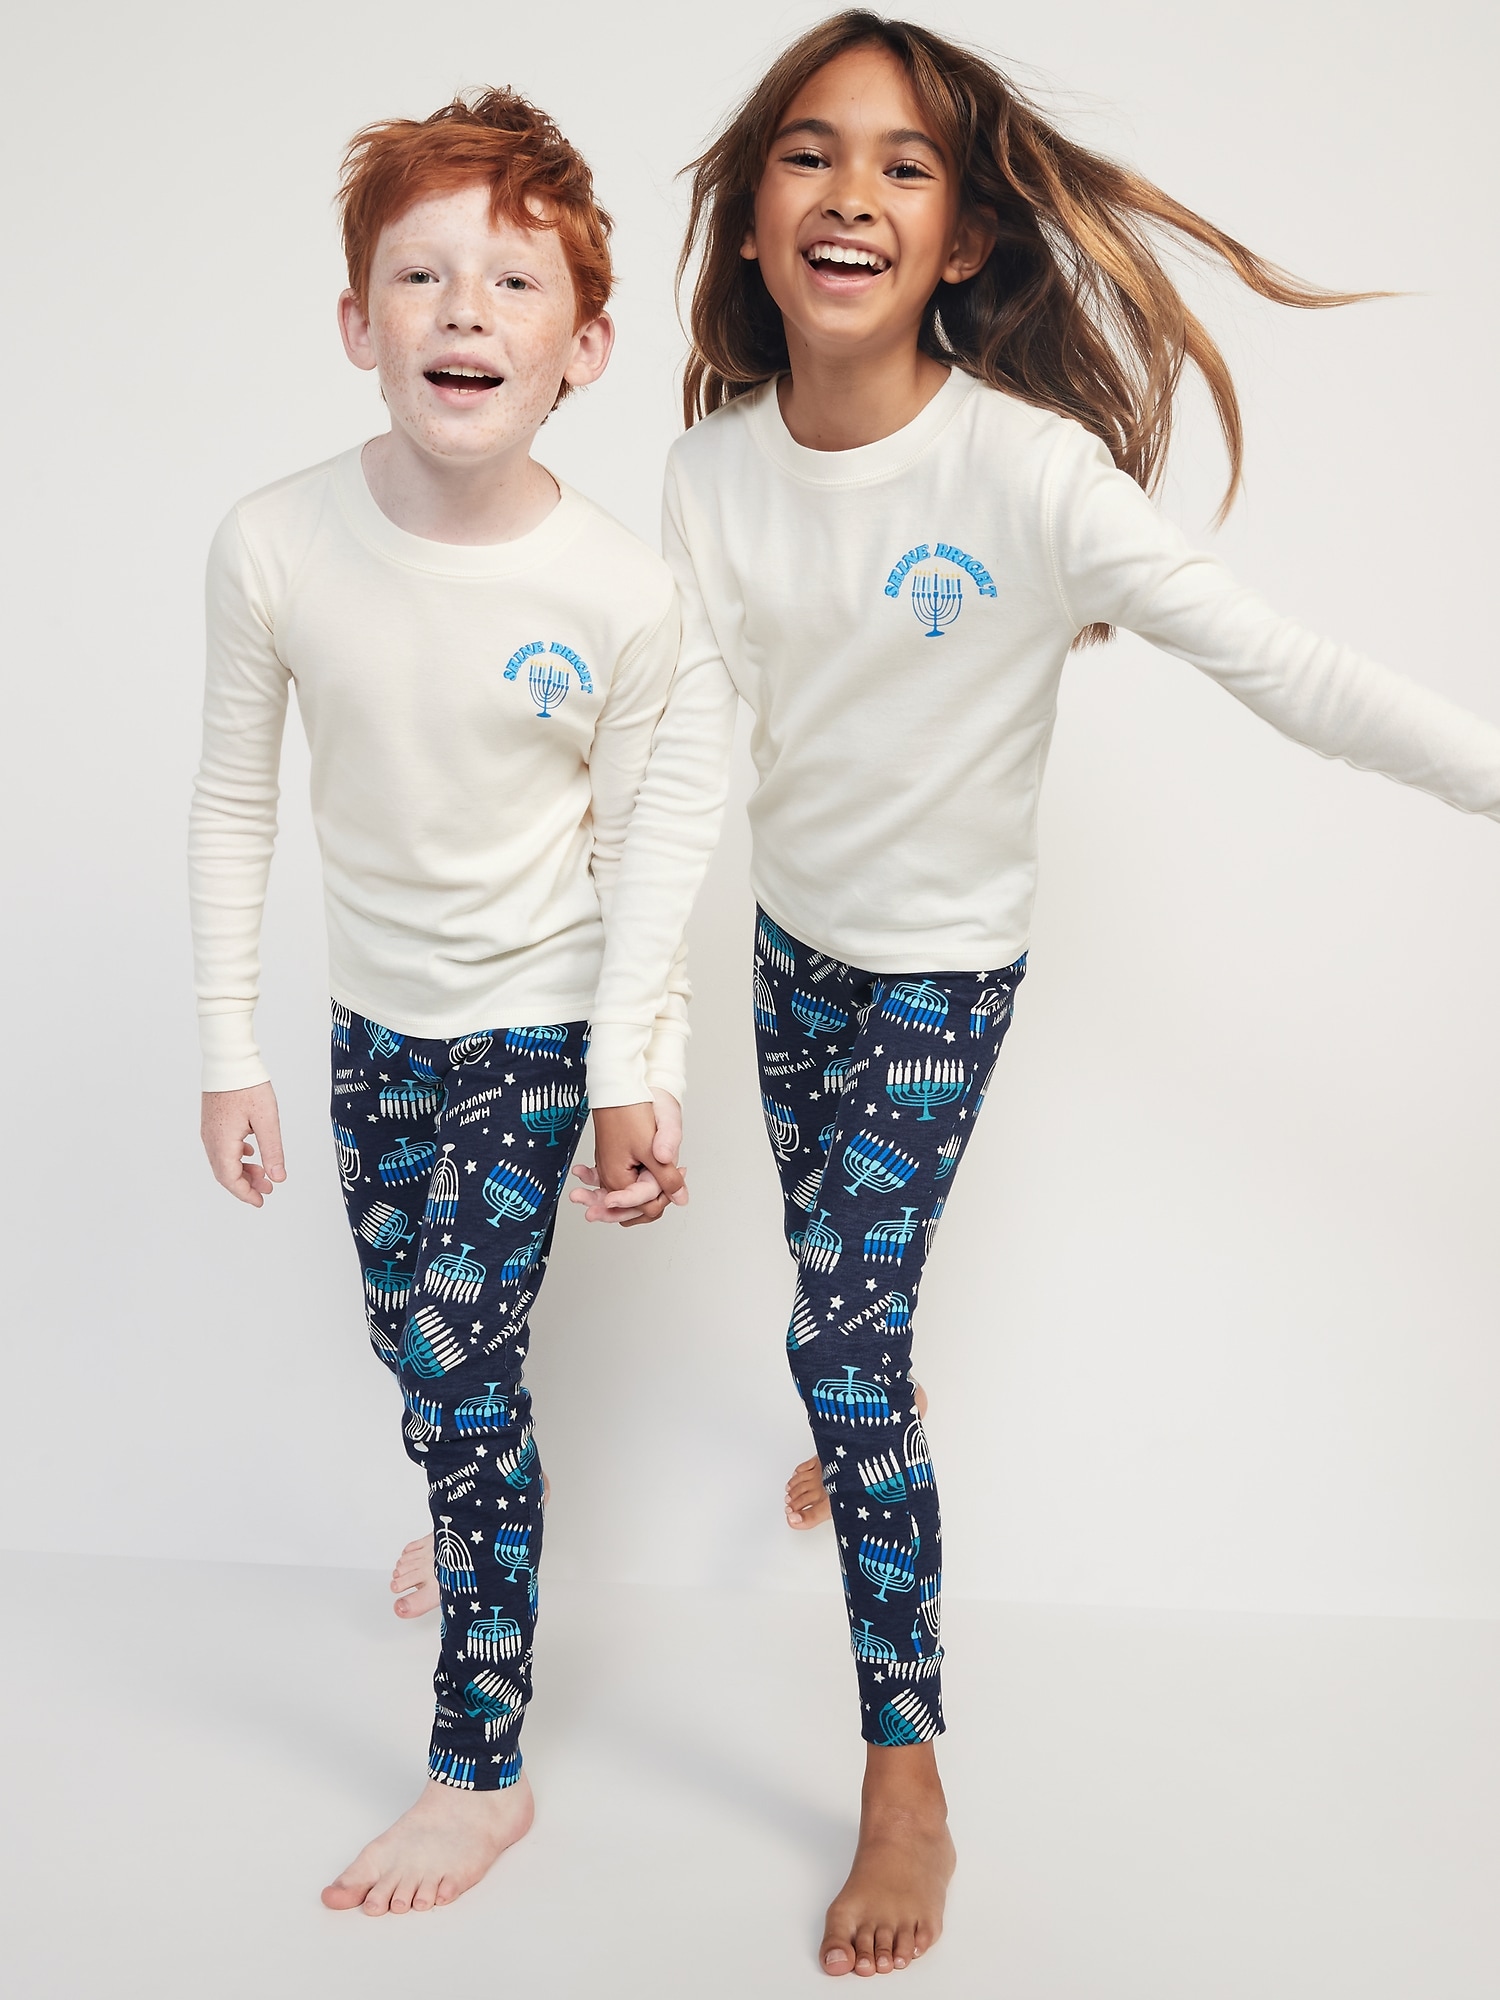 Oldnavy Gender-Neutral Matching Print Snug-Fit Pajama Set for Kids